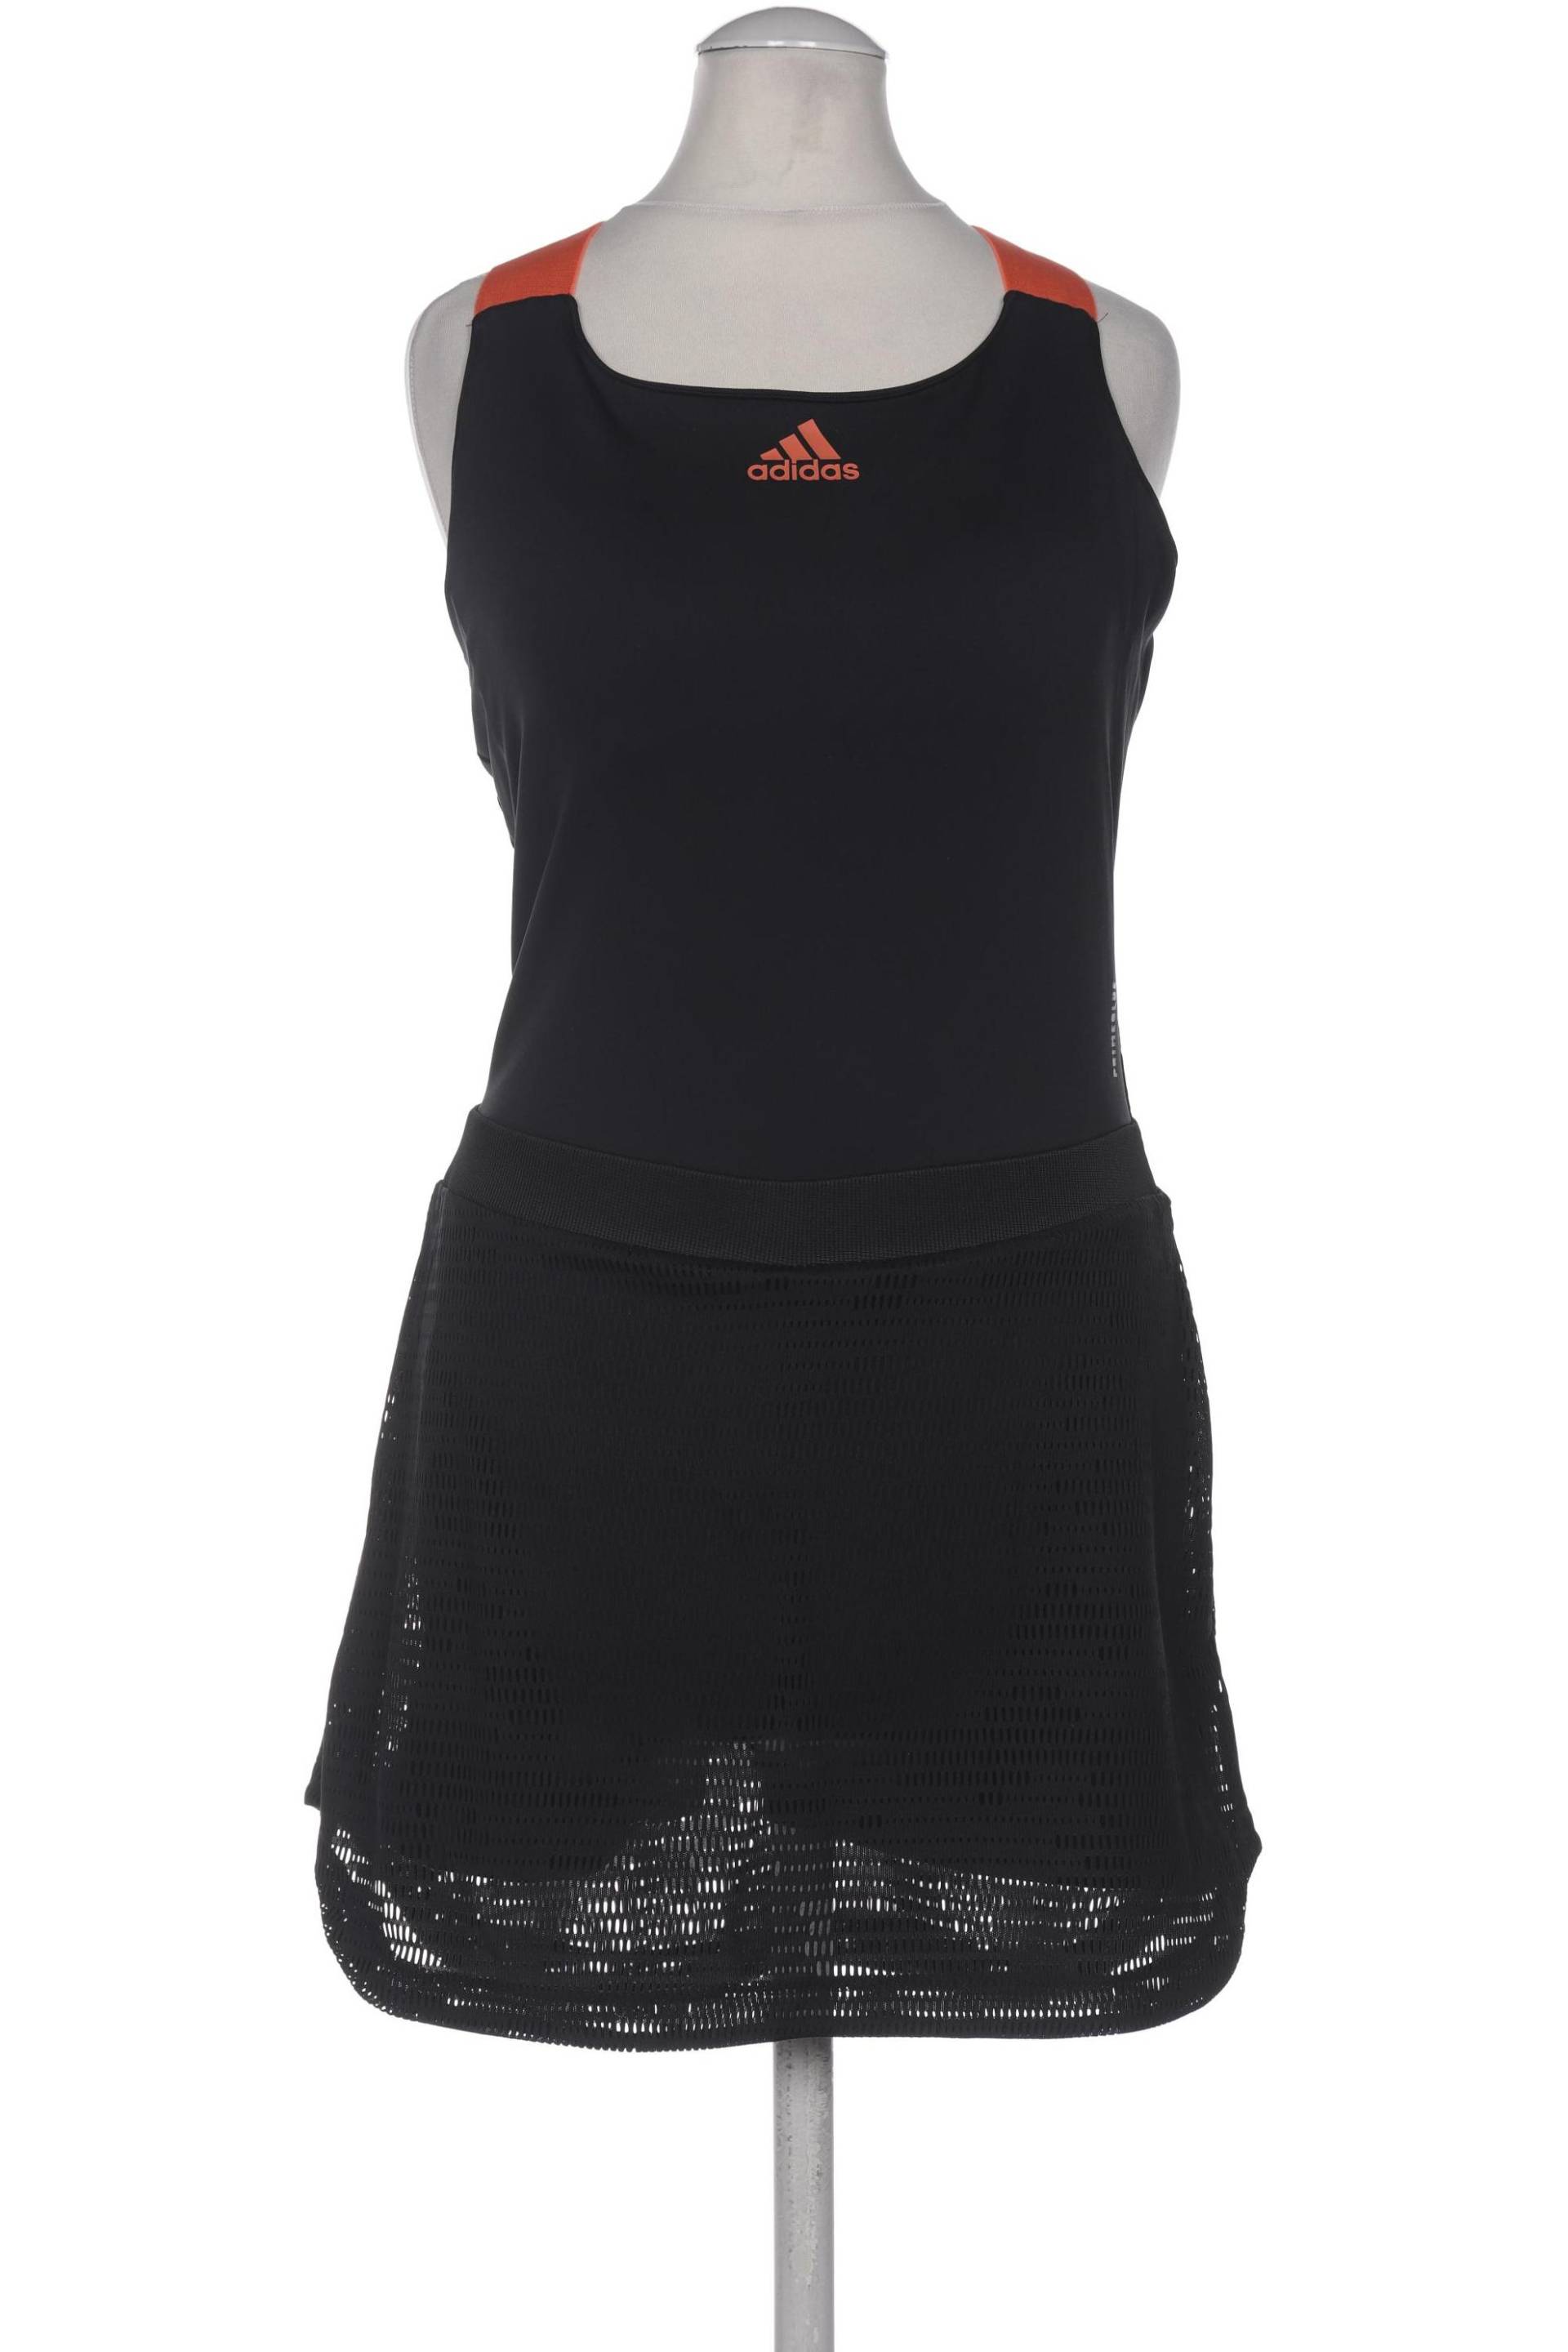 adidas Damen Jumpsuit/Overall, schwarz, Gr. 36 von Adidas